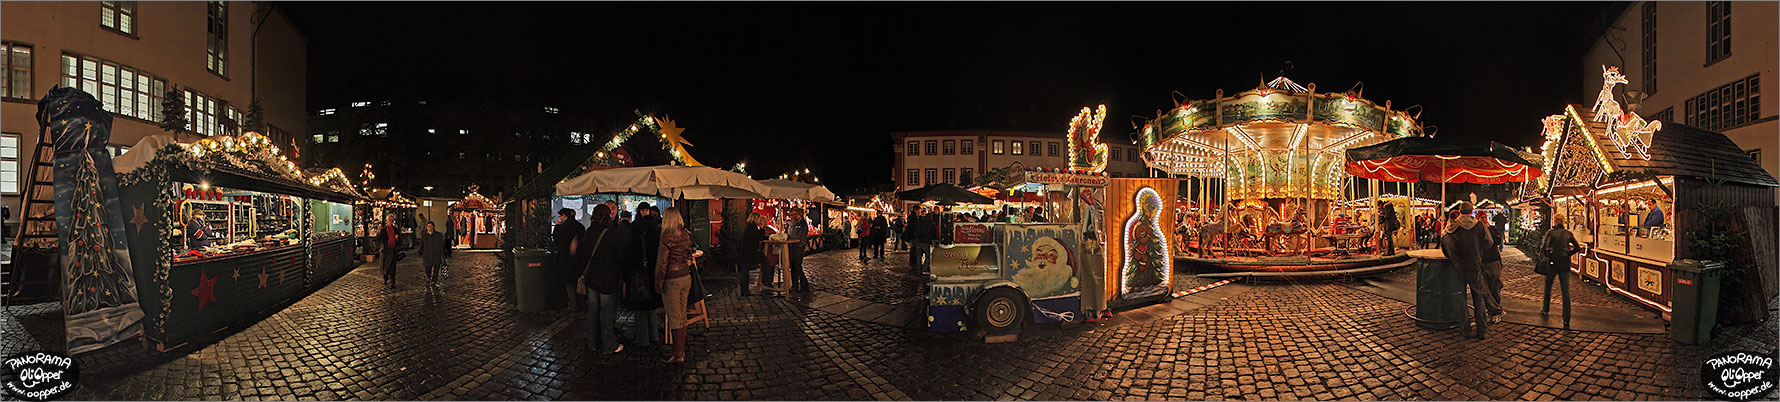 Weihnachtsmarkt Heidelberg - Universittsplatz - p010 - (c) by Oliver Opper